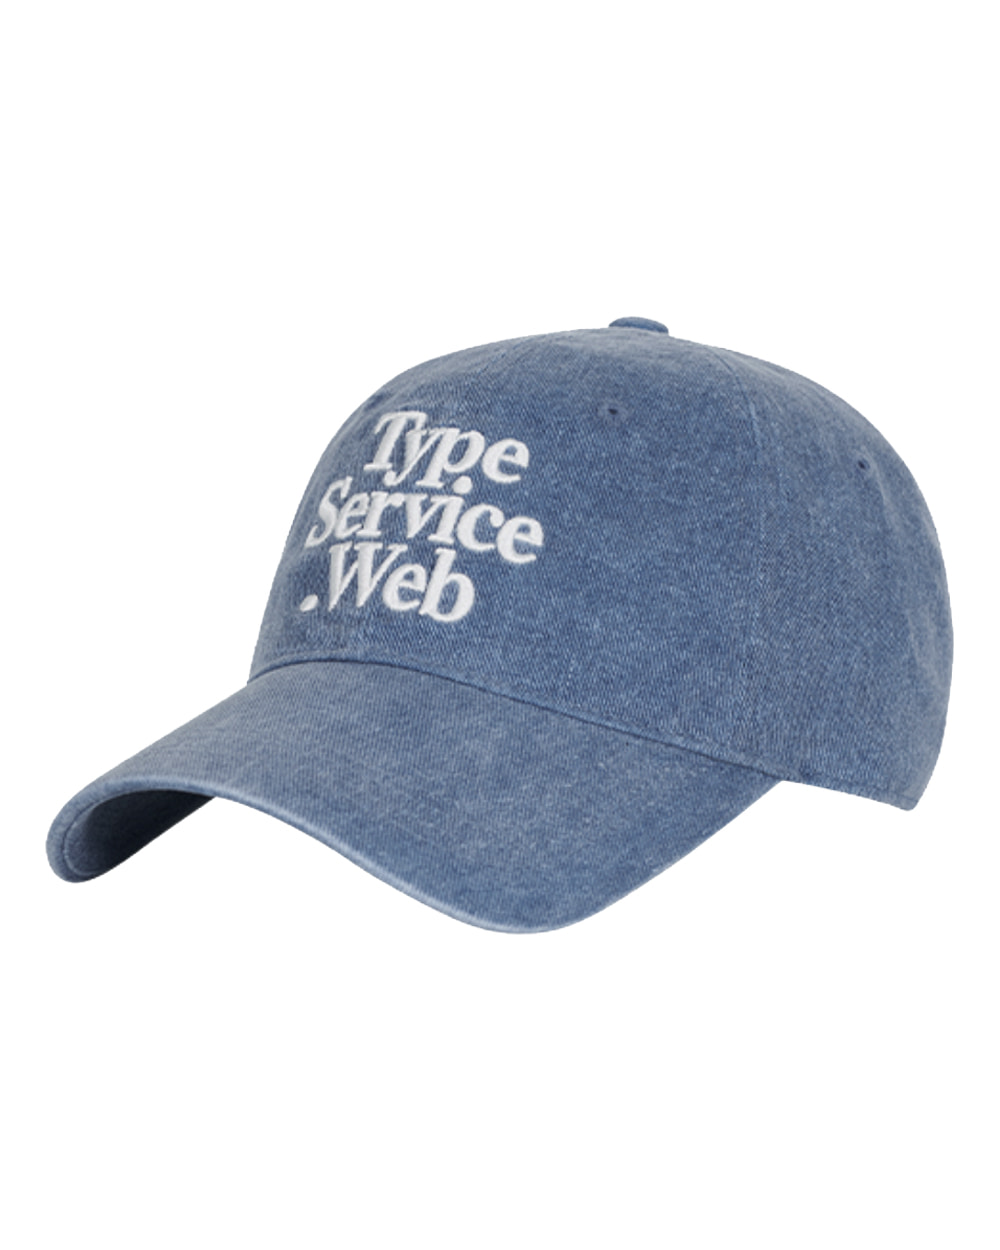 타입서비스 Typeservice Web Cap (Blue)